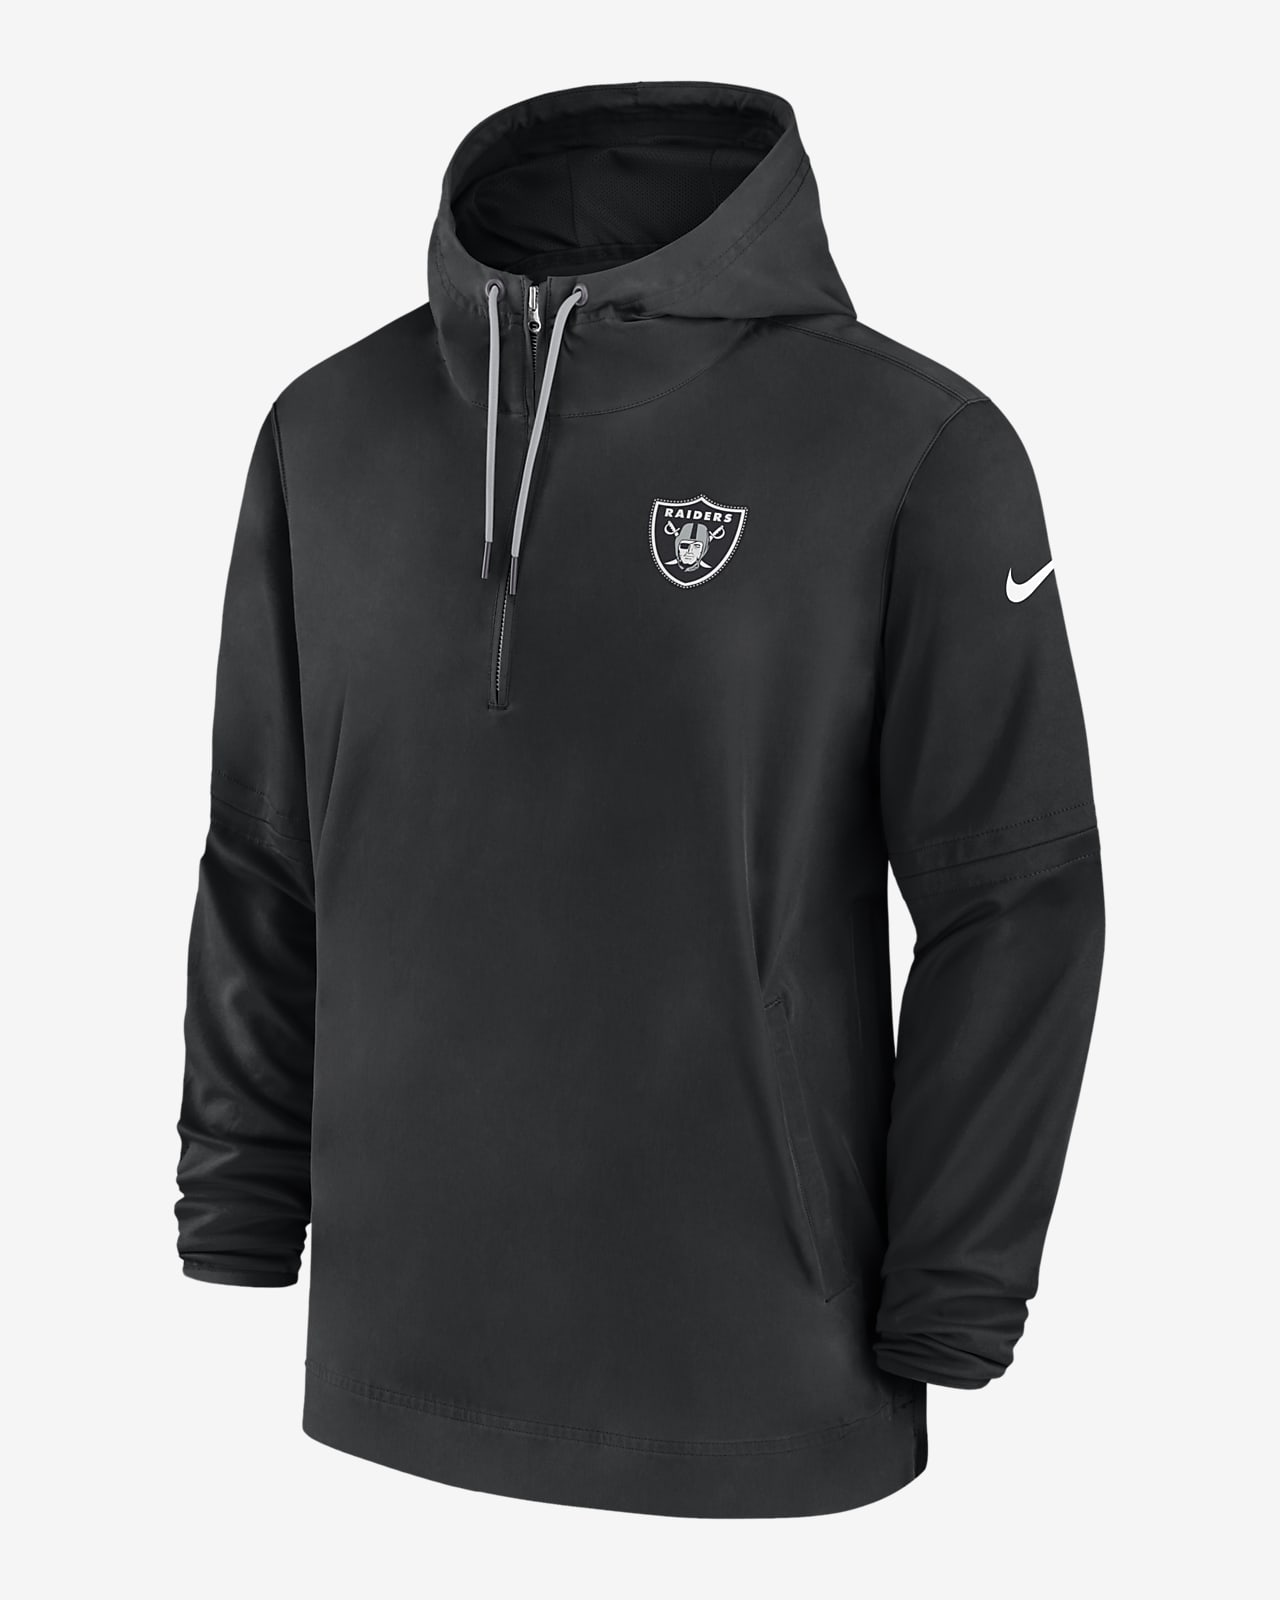 Nike Men's Las Vegas Raiders Sideline Half-Zip Hoodie